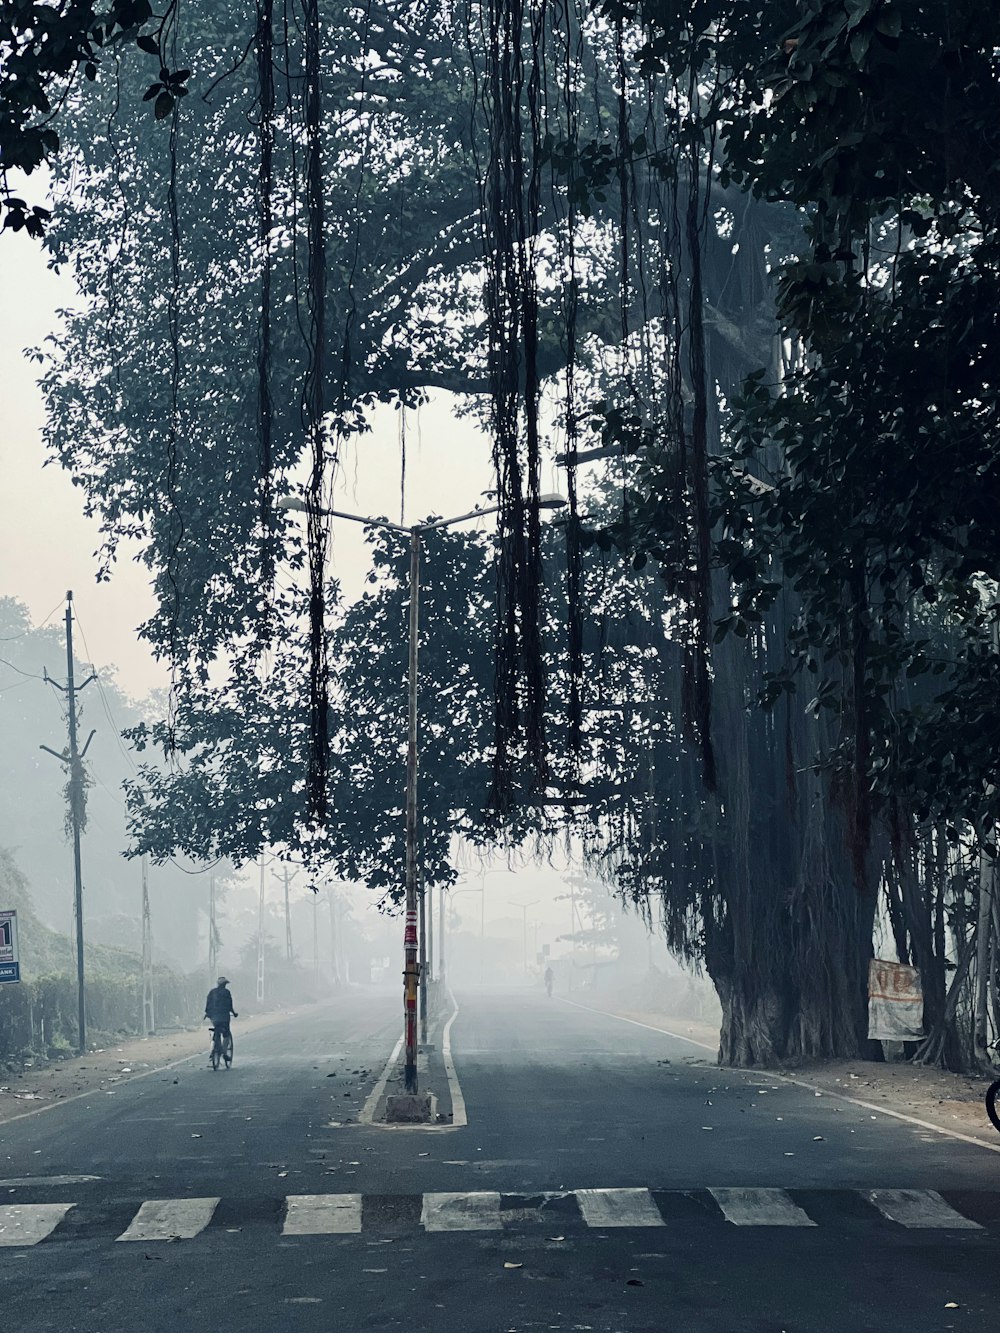 une personne à vélo dans une rue dans le brouillard